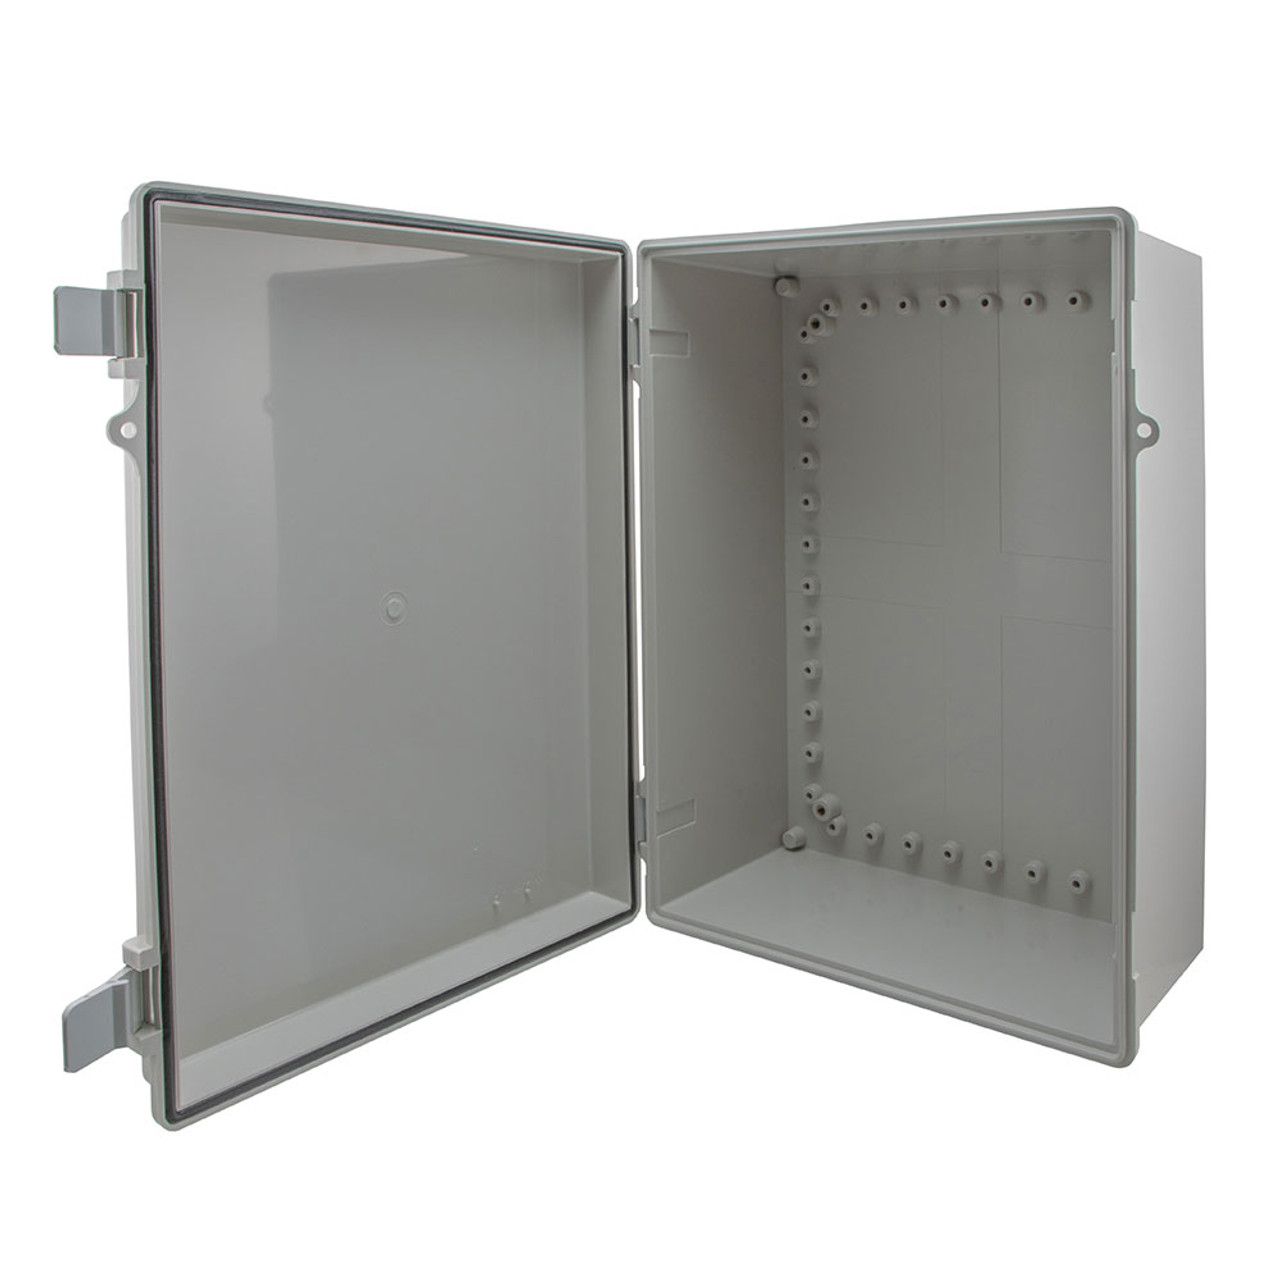 14x10x06 ABS Plastic Weatherproof Indoor/Outdoor IP66 NEMA 4 Enclosure, Gray (Enclosure Only)